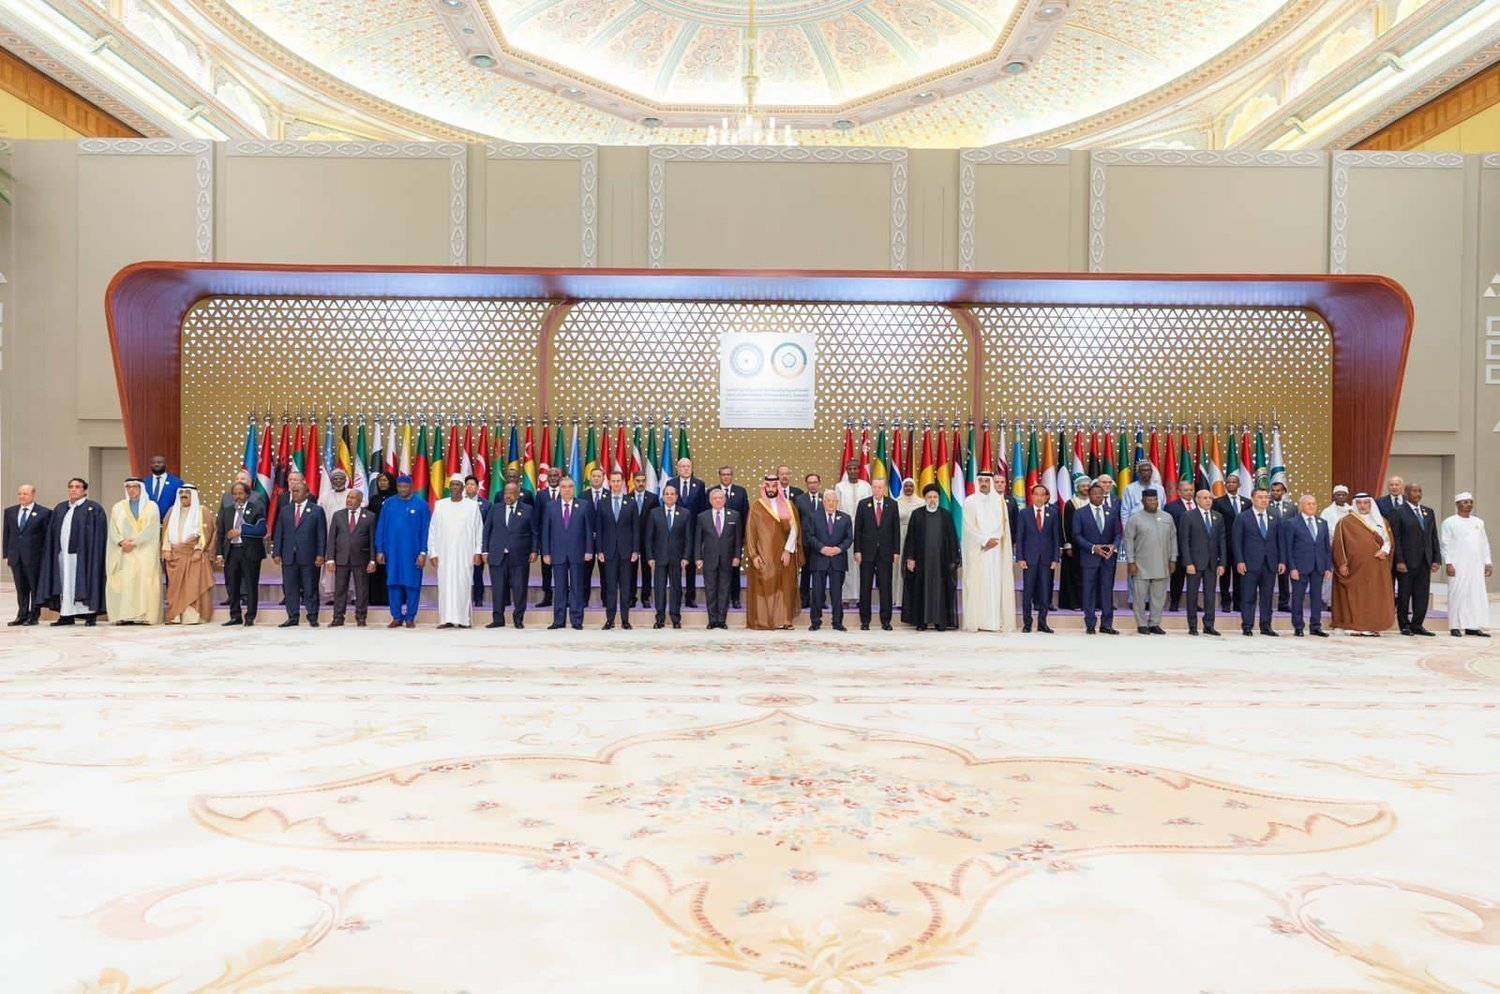 صورة جماعية للقادة المشاركين في القمة العربية - الإسلامية الأخيرة بالرياض (واس)